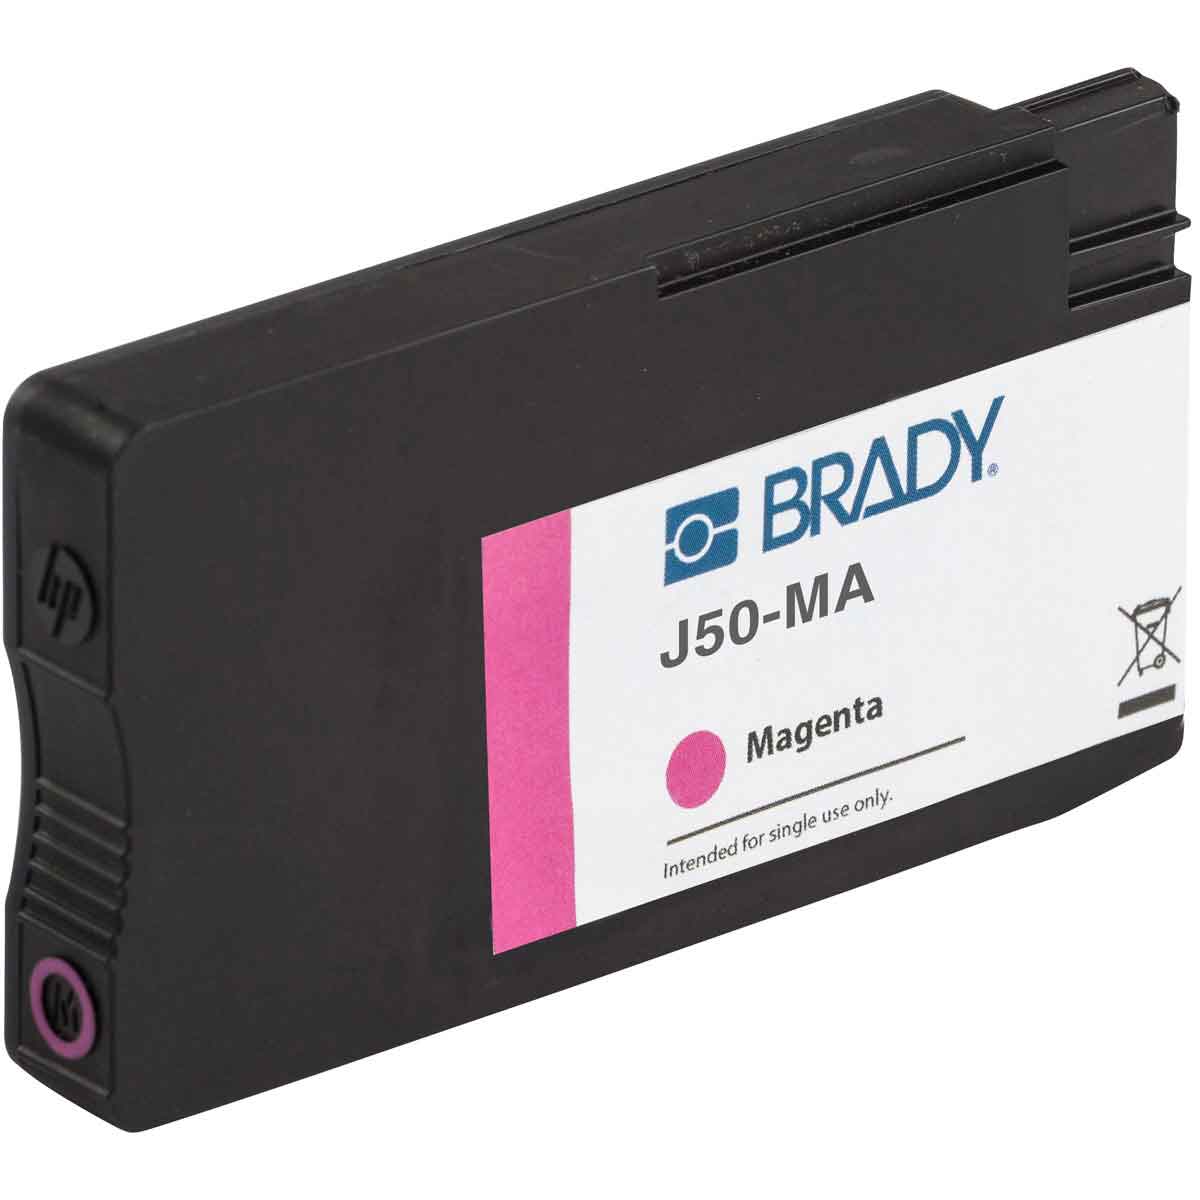 Cartouche d'encre magenta pour imprimante BradyJet J5000